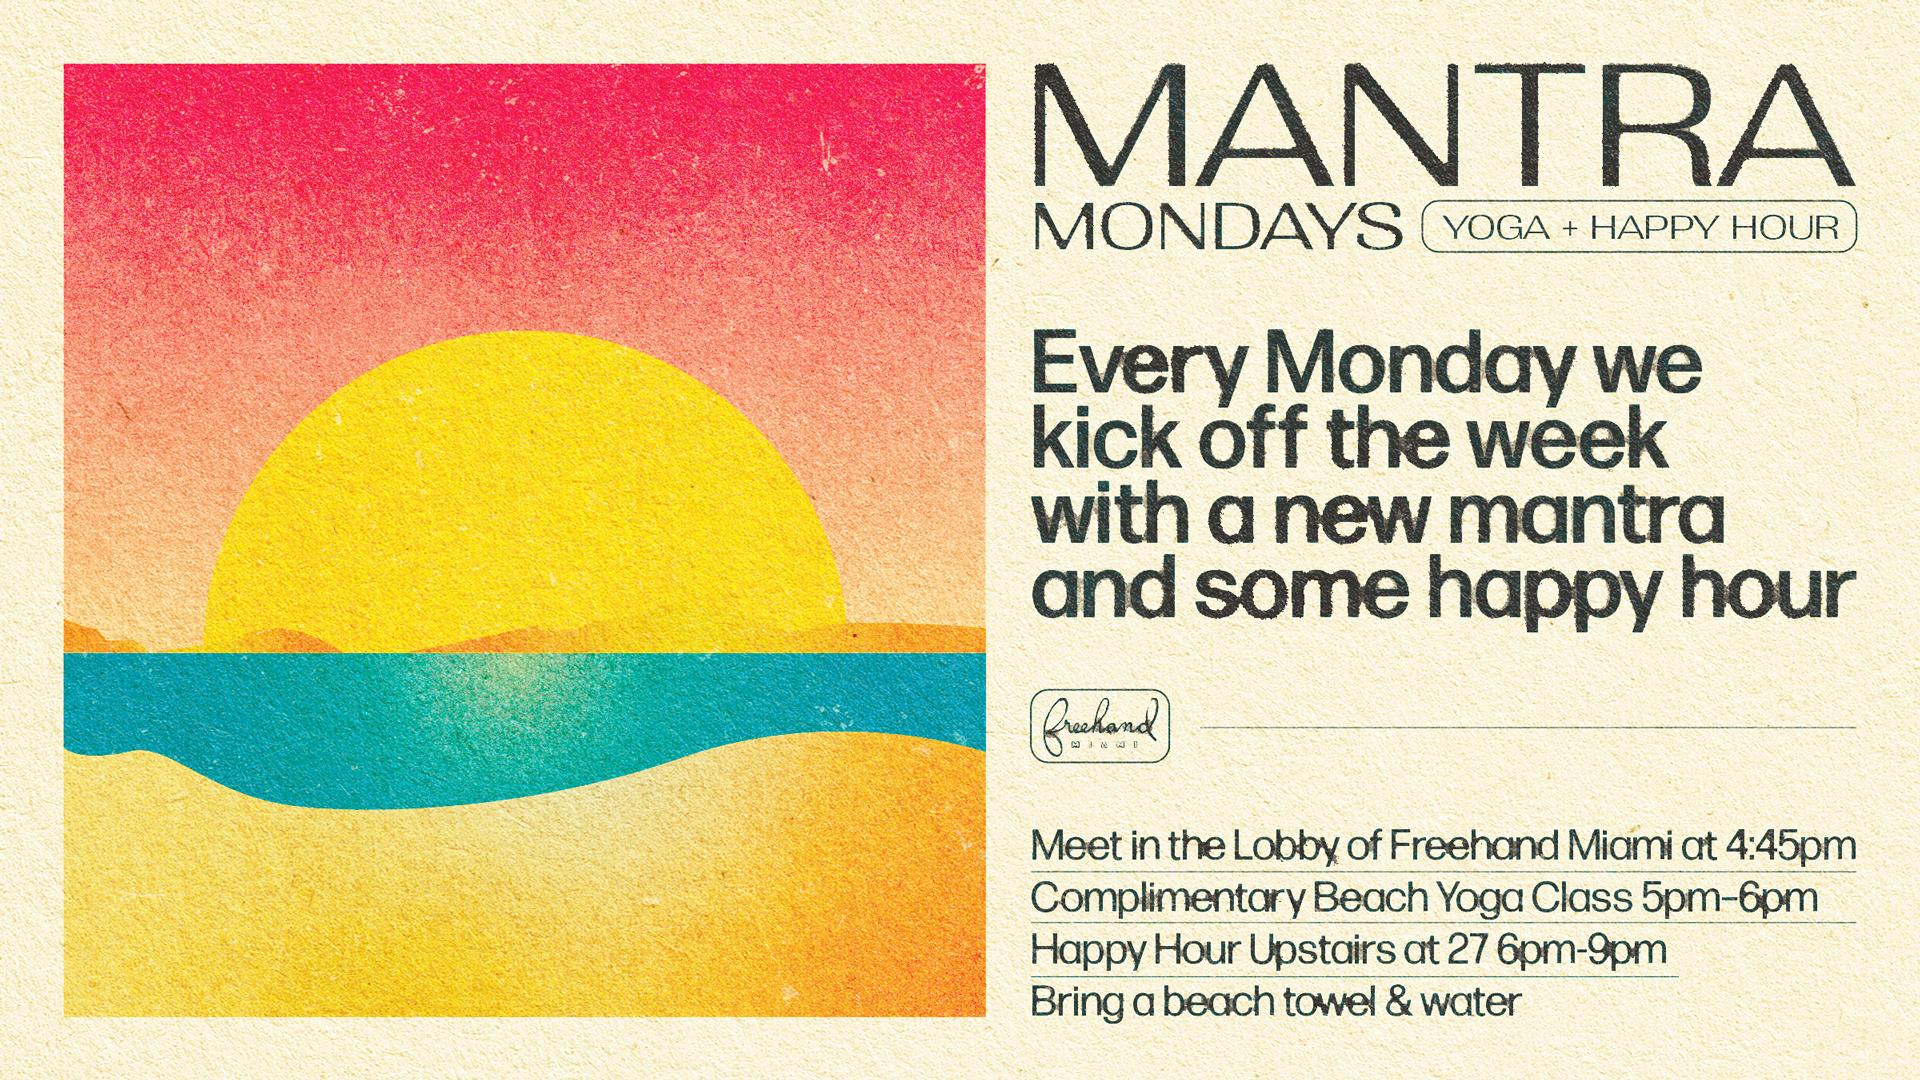 Mantra Mondays at Freehand Miami